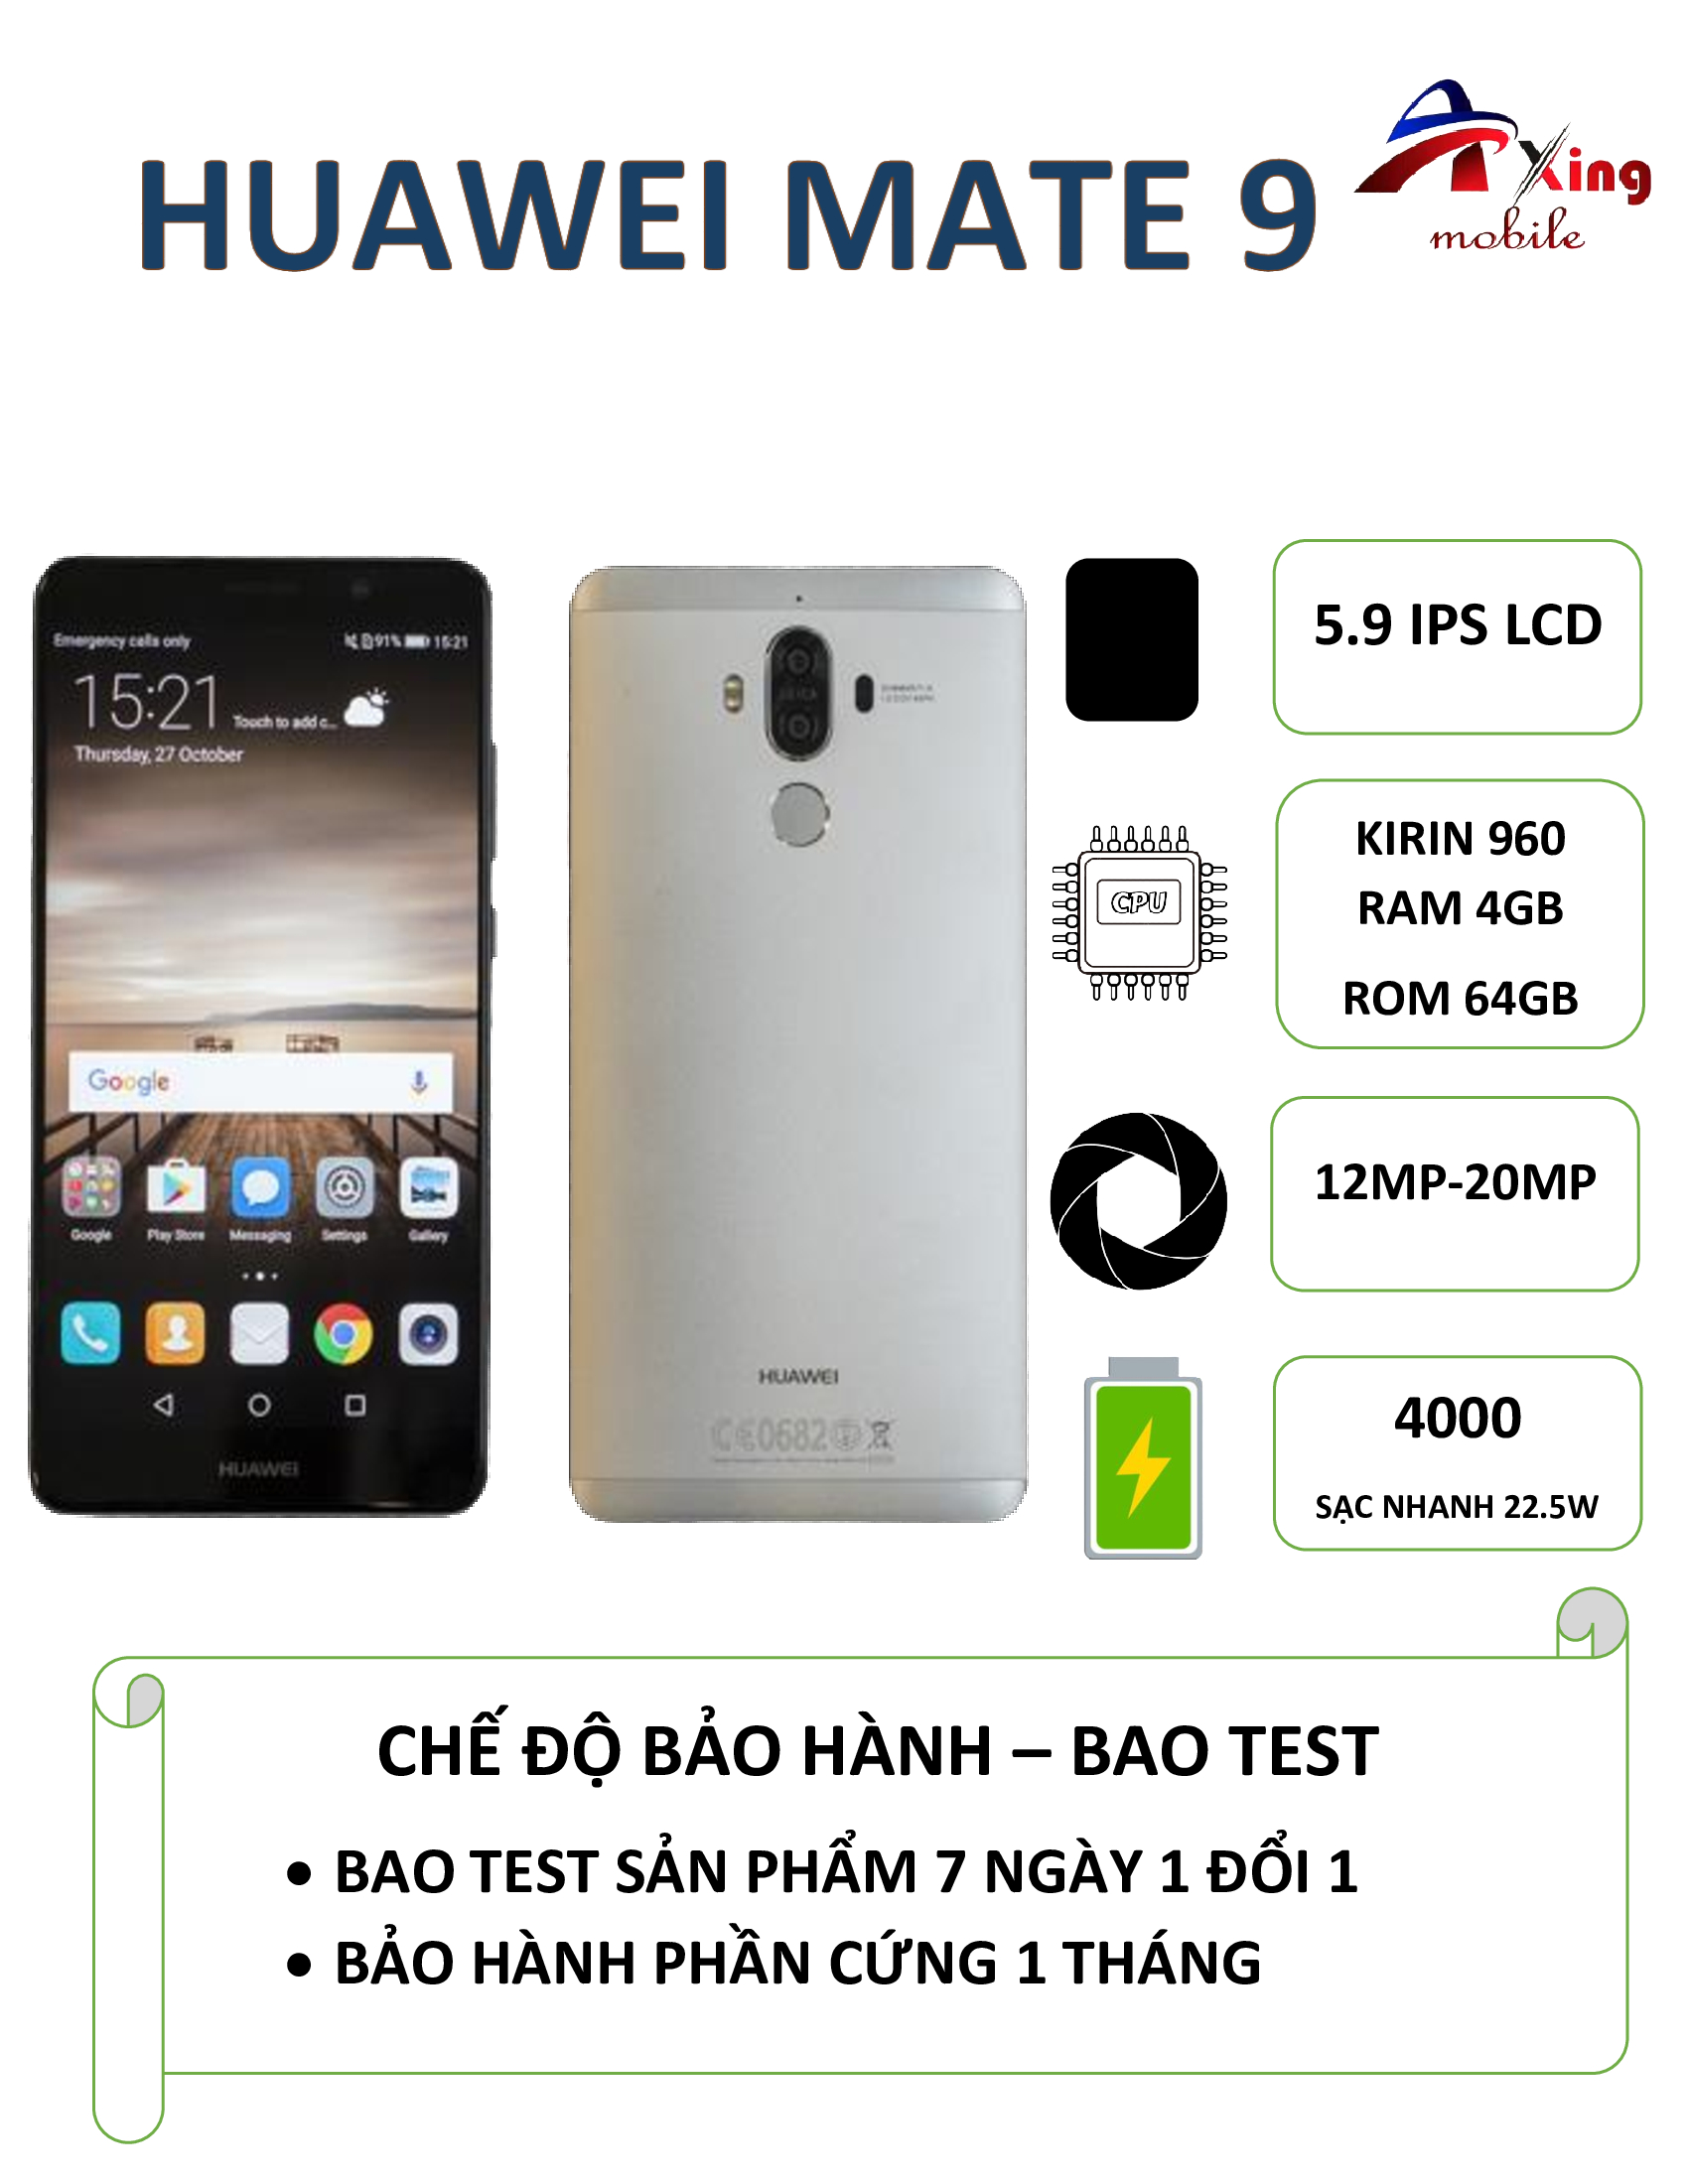 Điện thoại Huawei Mate 9 siêu phẩm giá rẻ 2 sim 2 sóng, cấu hình tốt, pin bền, camera đẹp...